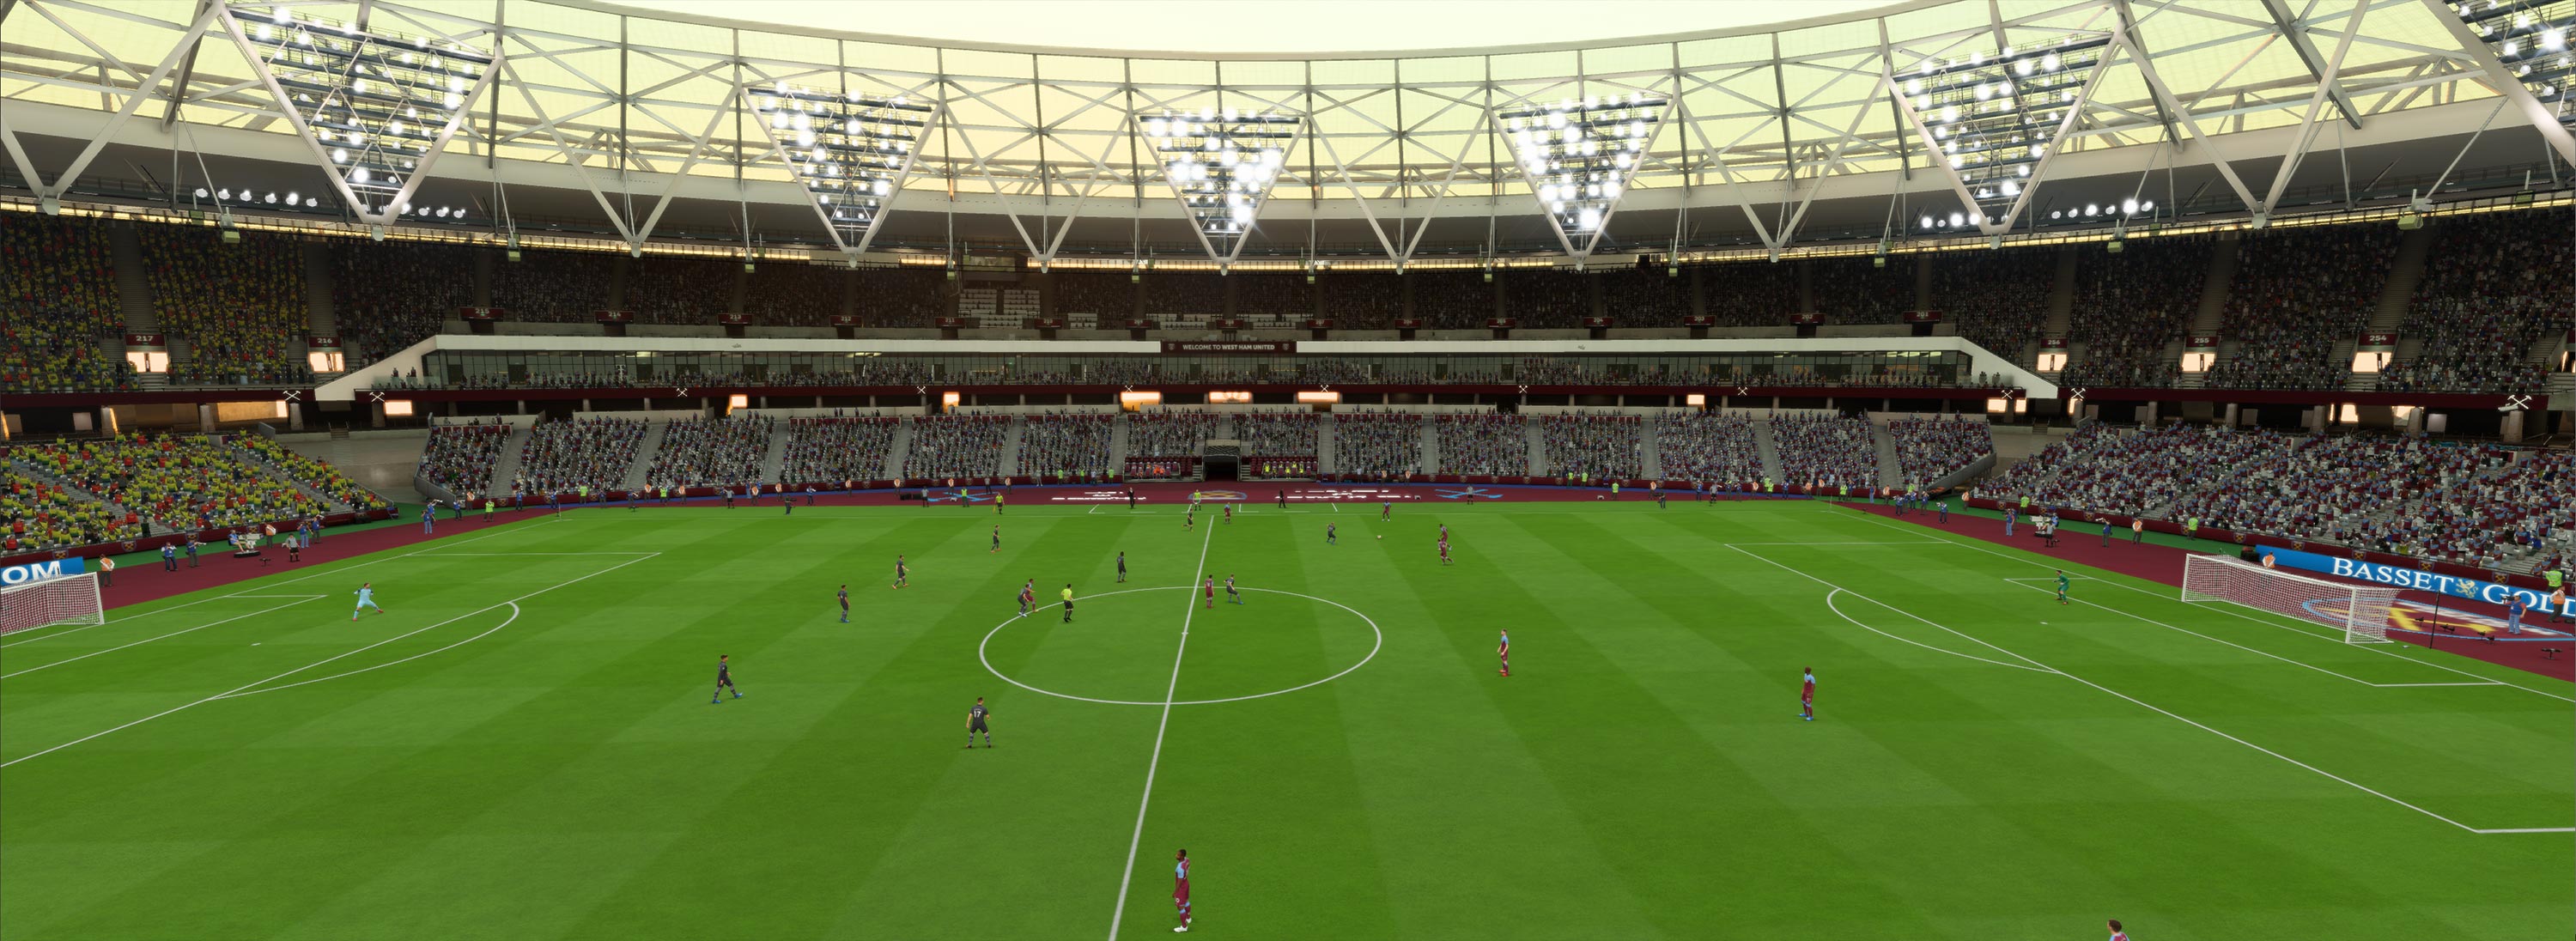 London Stadium FIFA 21 Stadiums